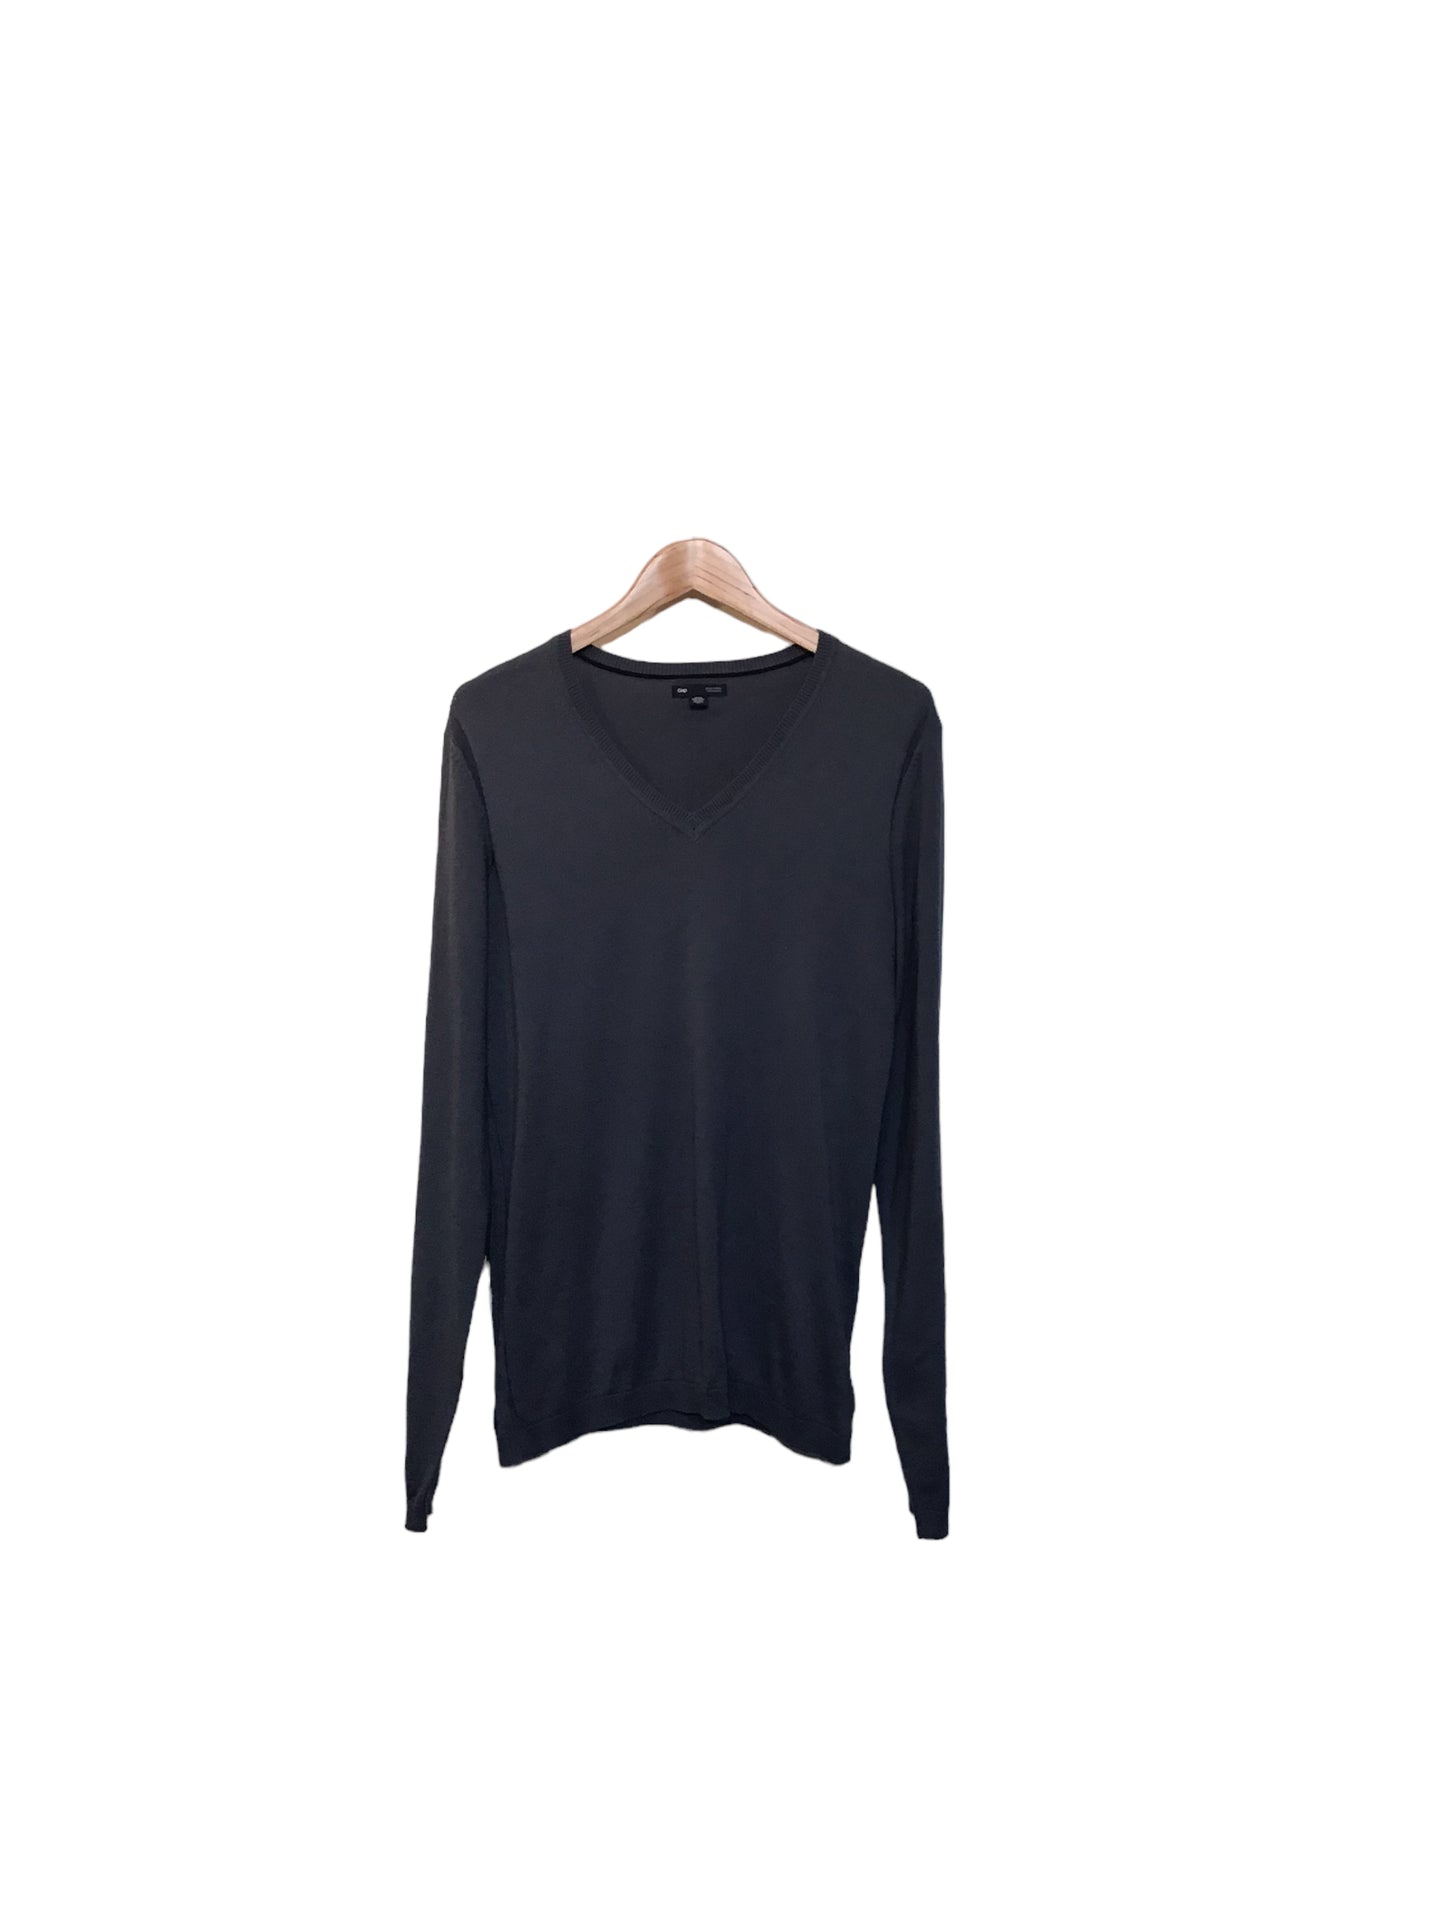 Gap V-Neck Sweatshirt (Size M)